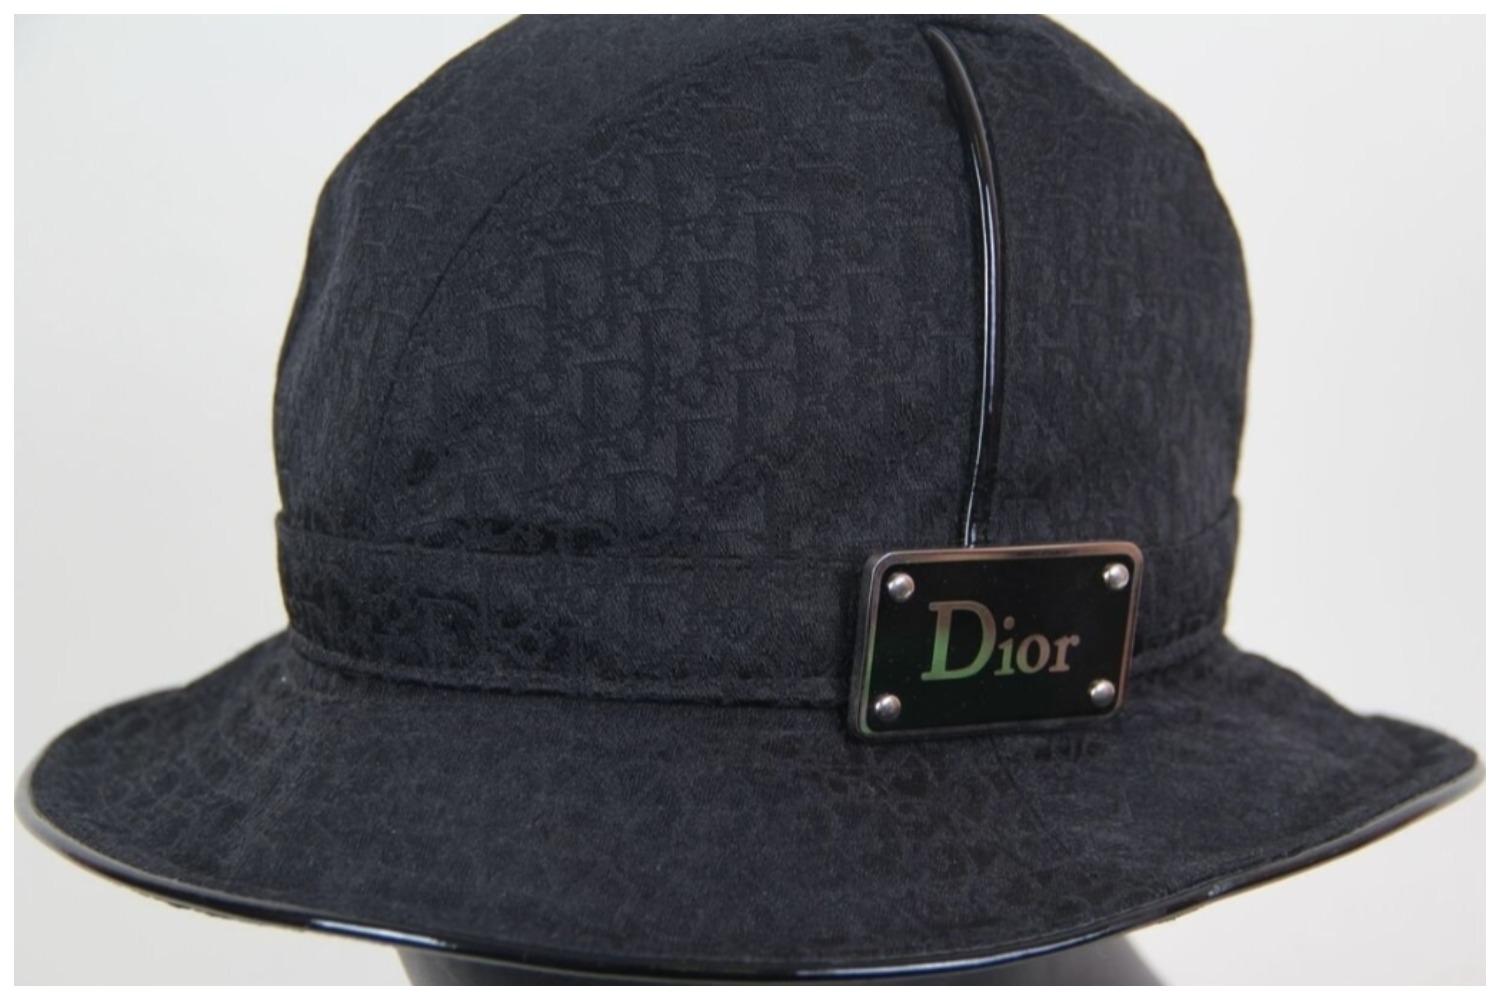 Dior Galliano Oblique Jacquard Bucket Hat Diorissimo Trotter
Un chapeau seau en toile noire décoré de l'imprimé iconique Diorissimo et d'une plaque de logo créée par John Galliano pour Christian Dior en 2004.
Collectional : 2004
Style Christian Dior